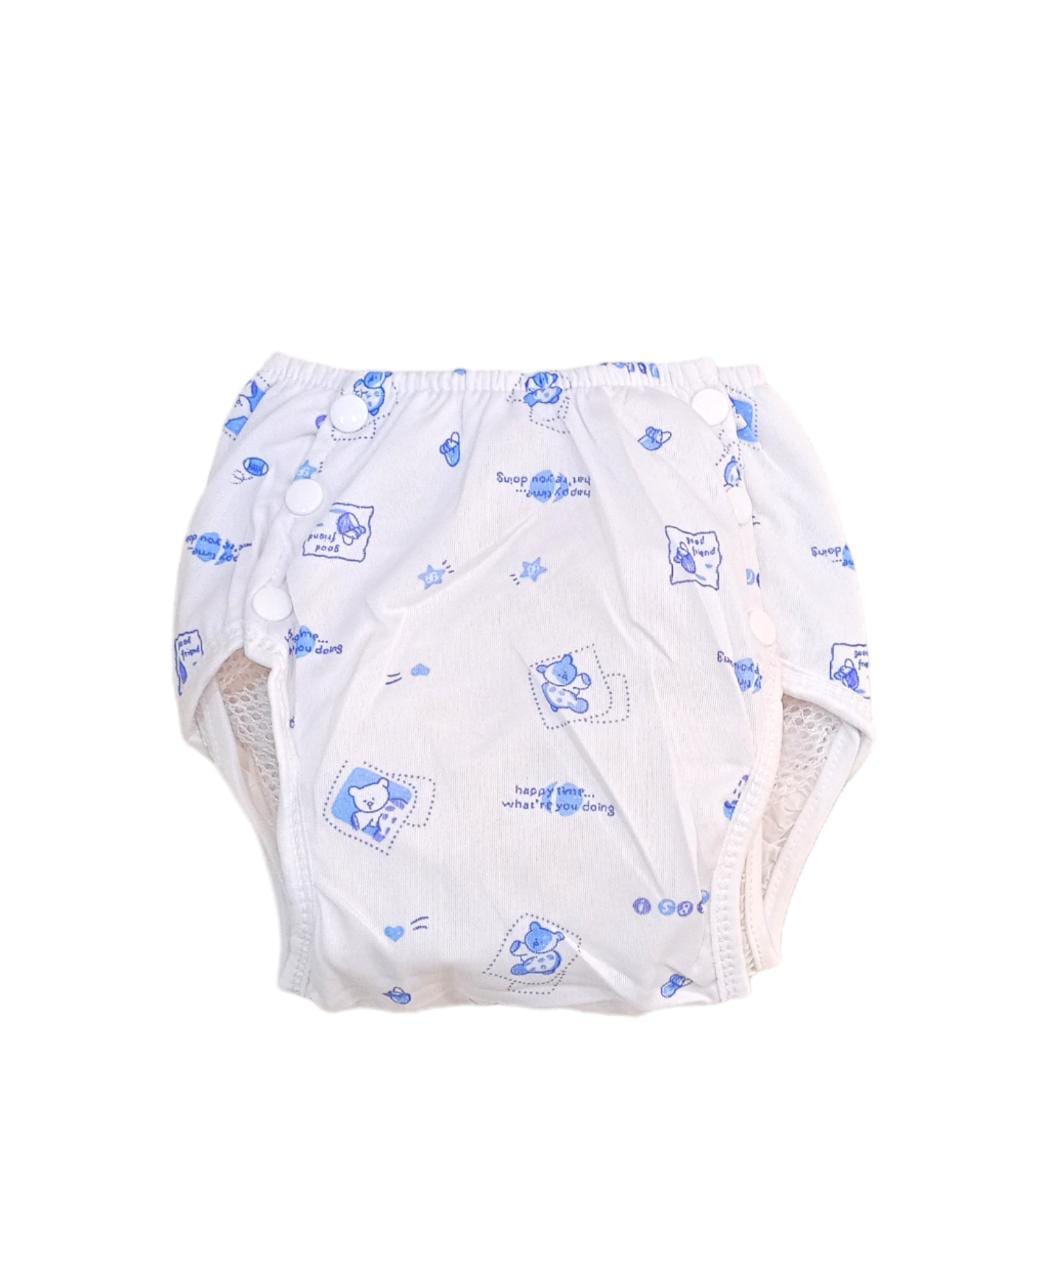 Baby Nappies/ Baby Diaper Pantie/Underpants